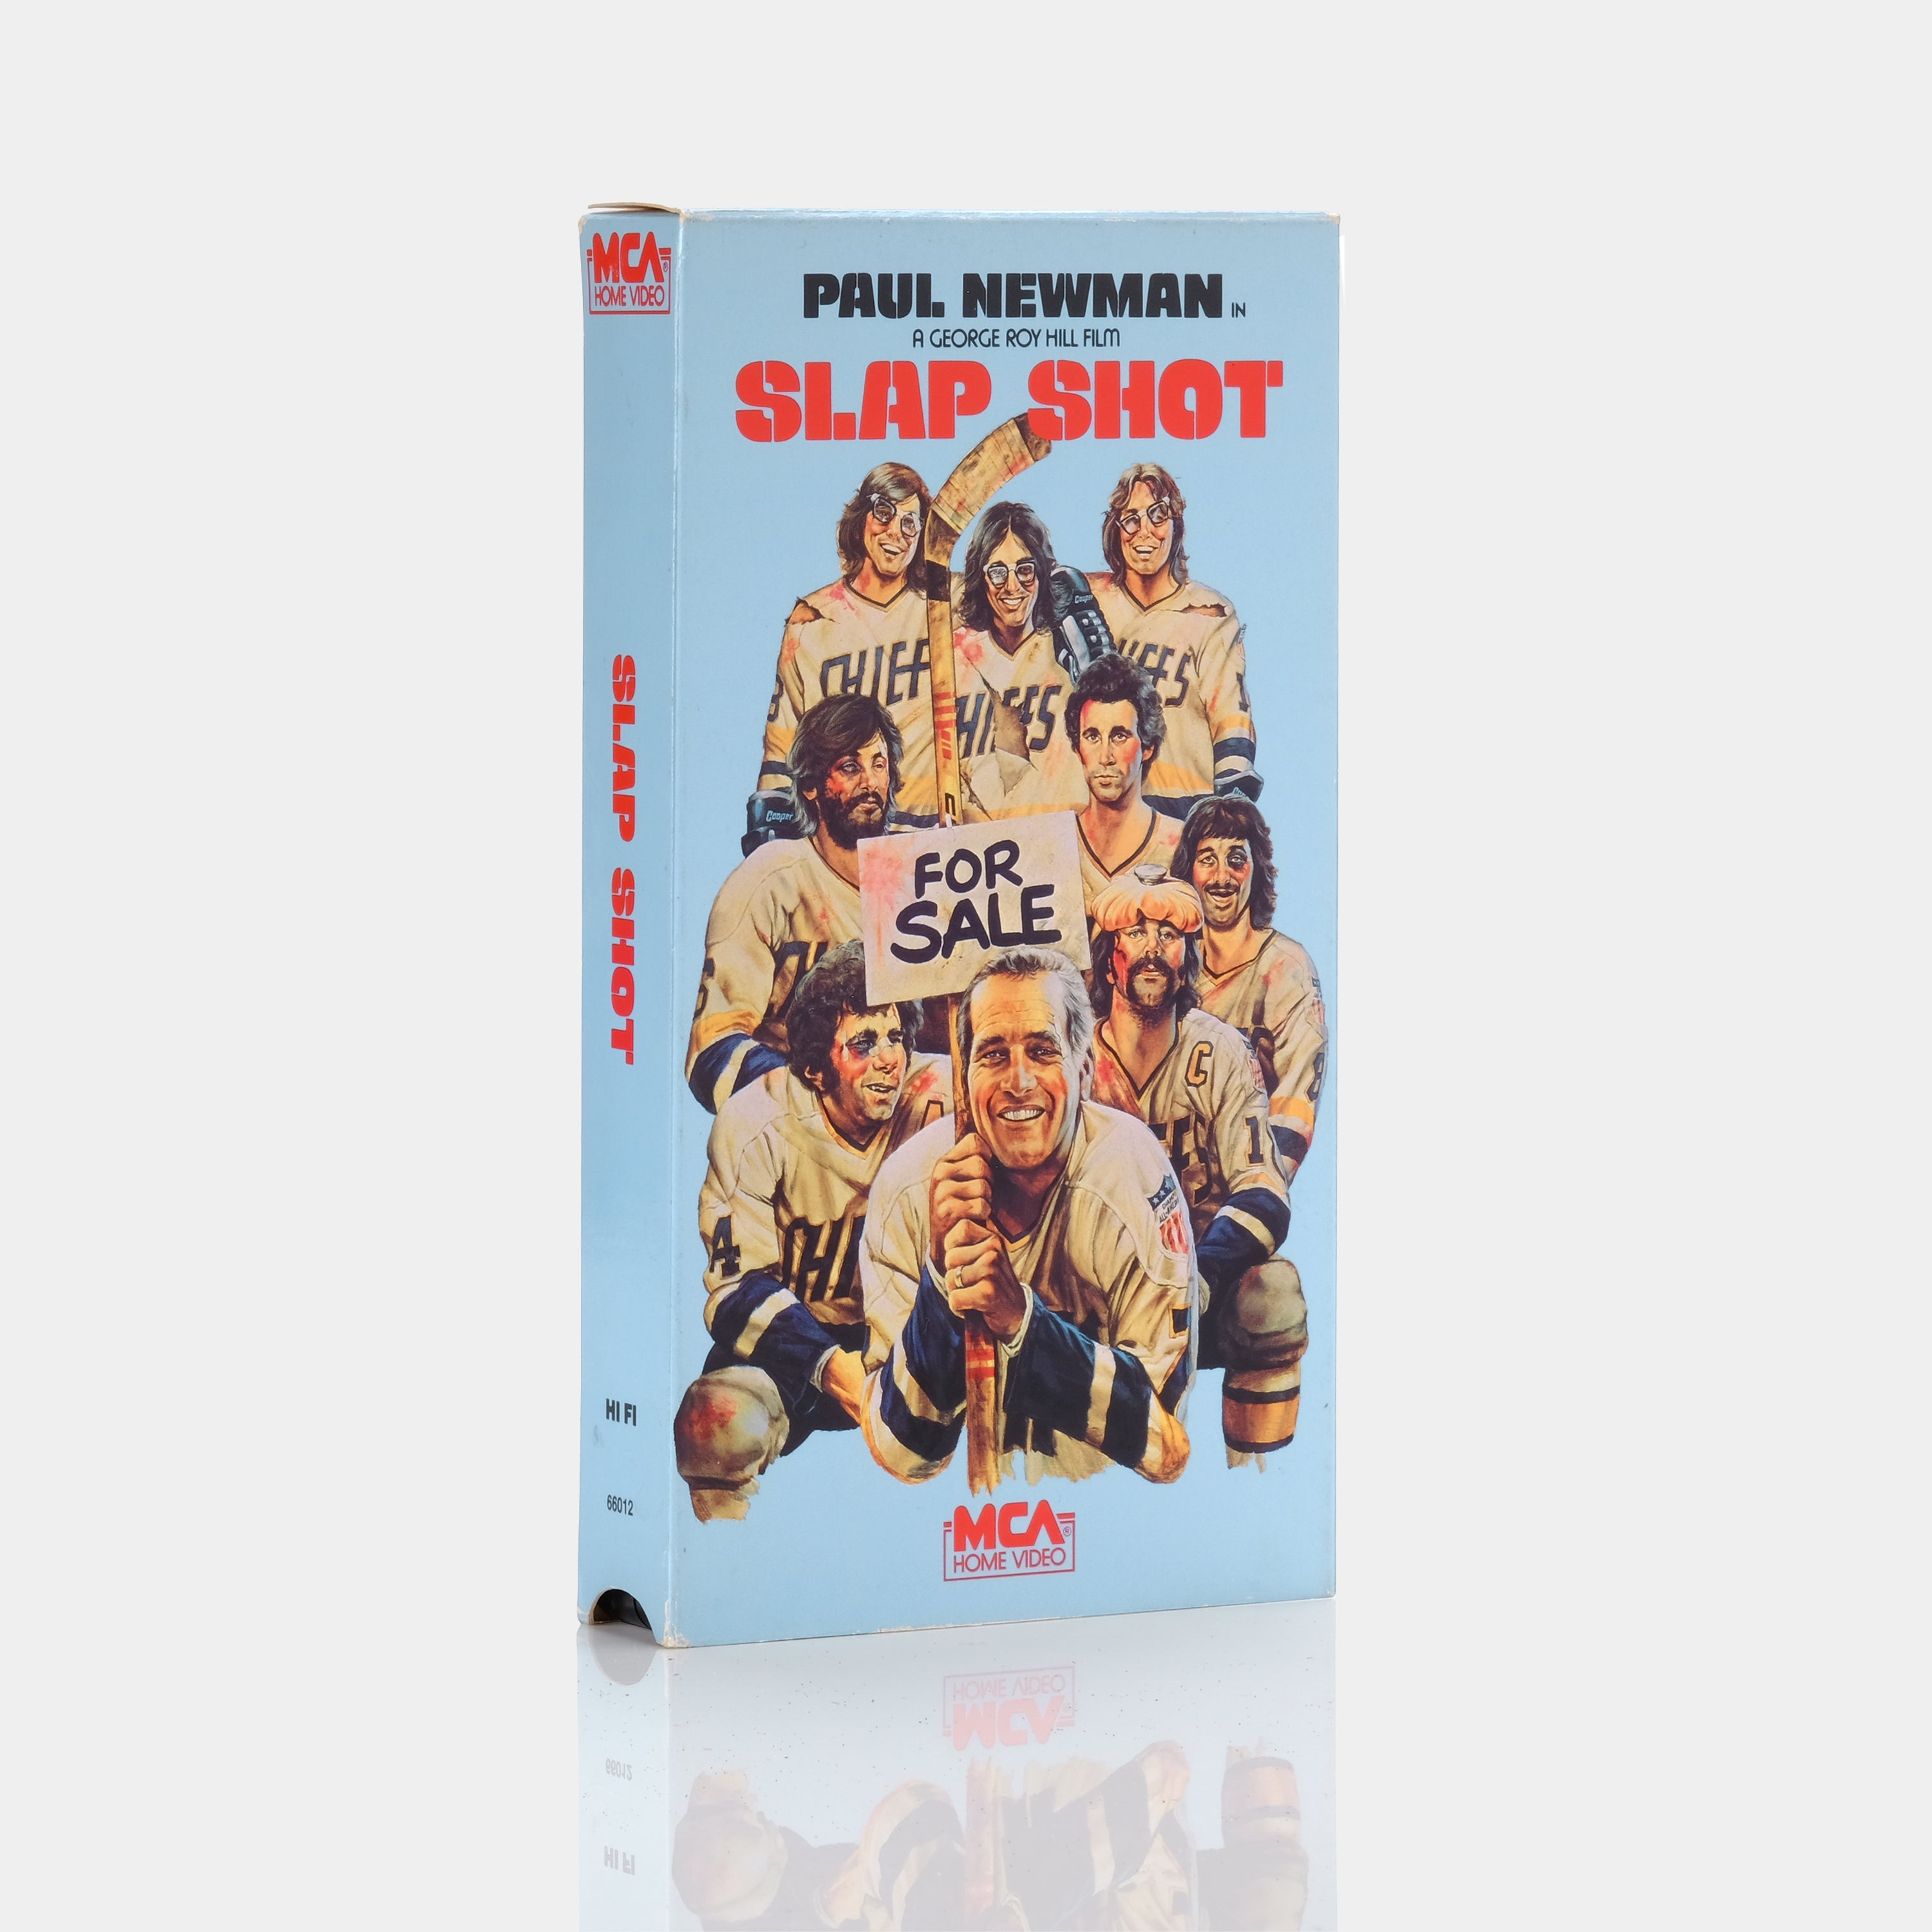 Slap Shot VHS Tape